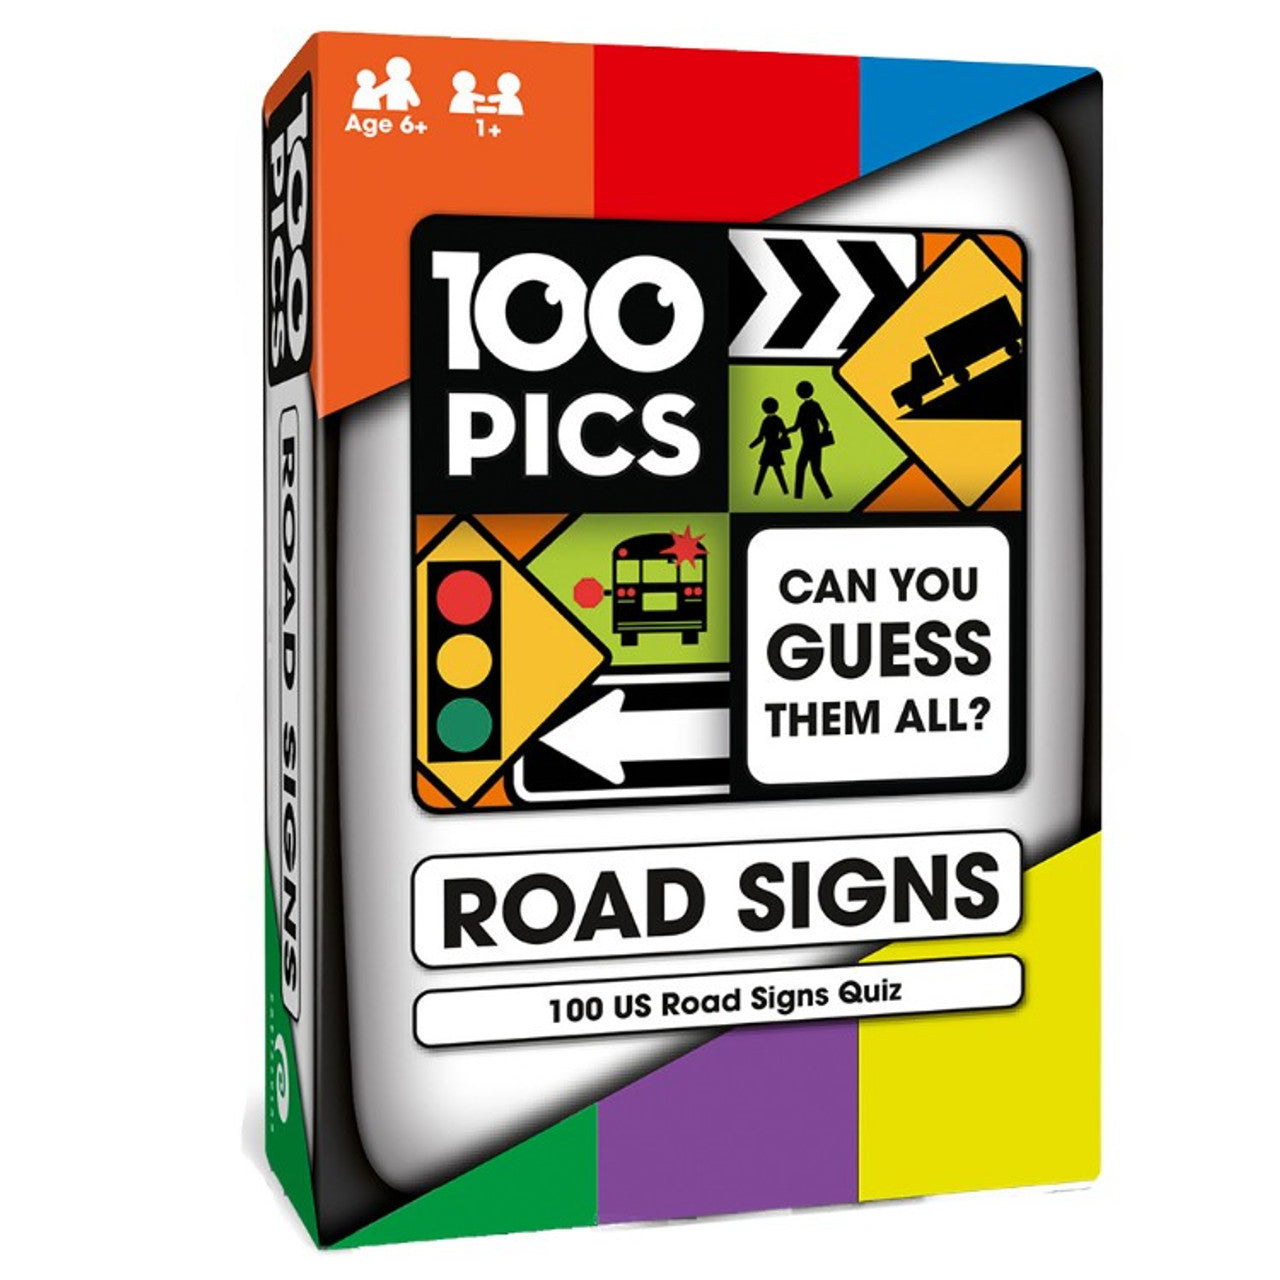 100 Pics: Road Signs